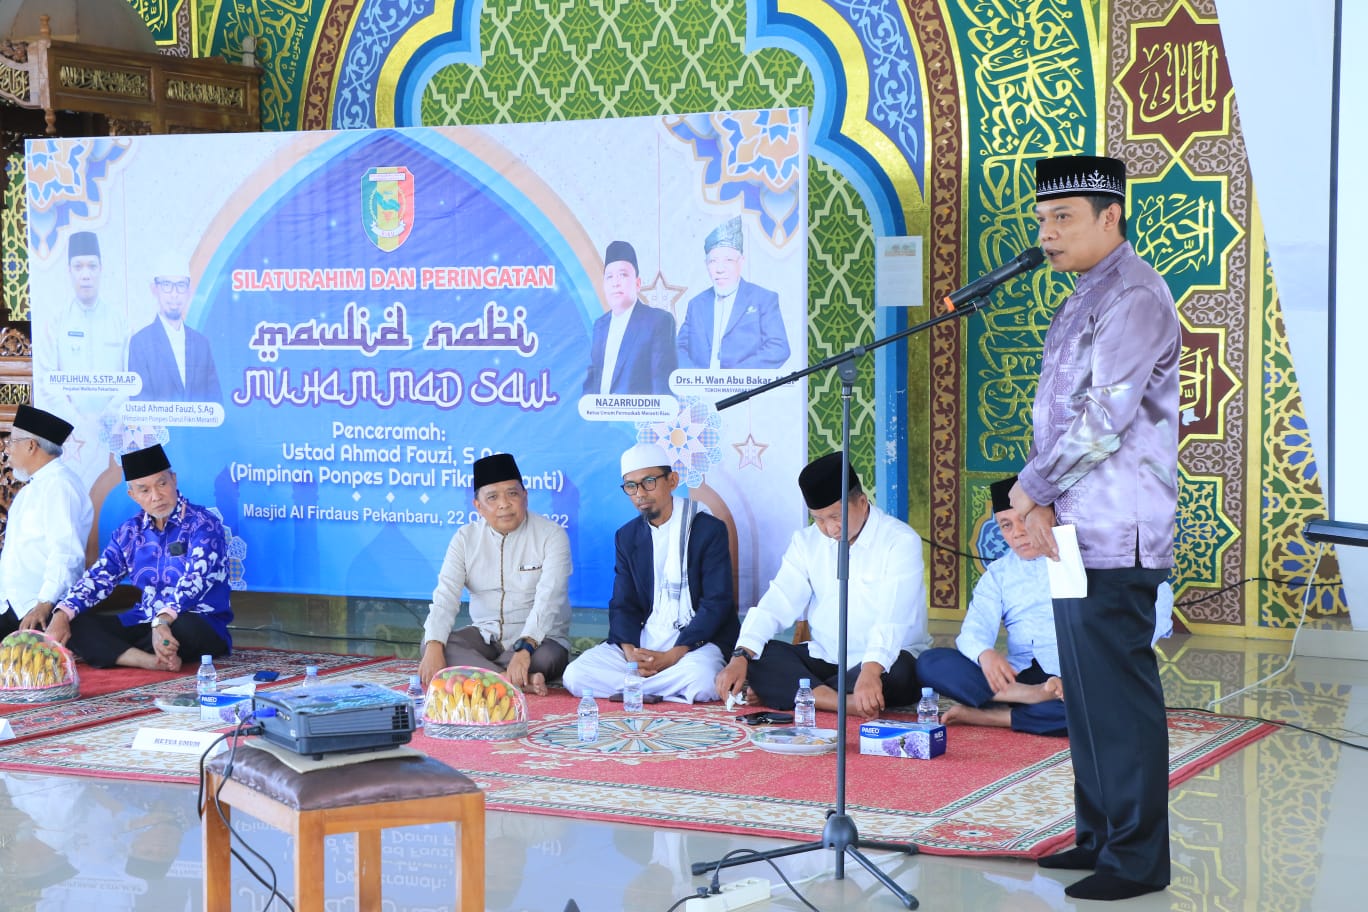 Permaskab Meranti Riau Gelar Silaturahim dan Peringatan Maulid Nabi Muhammad SAW